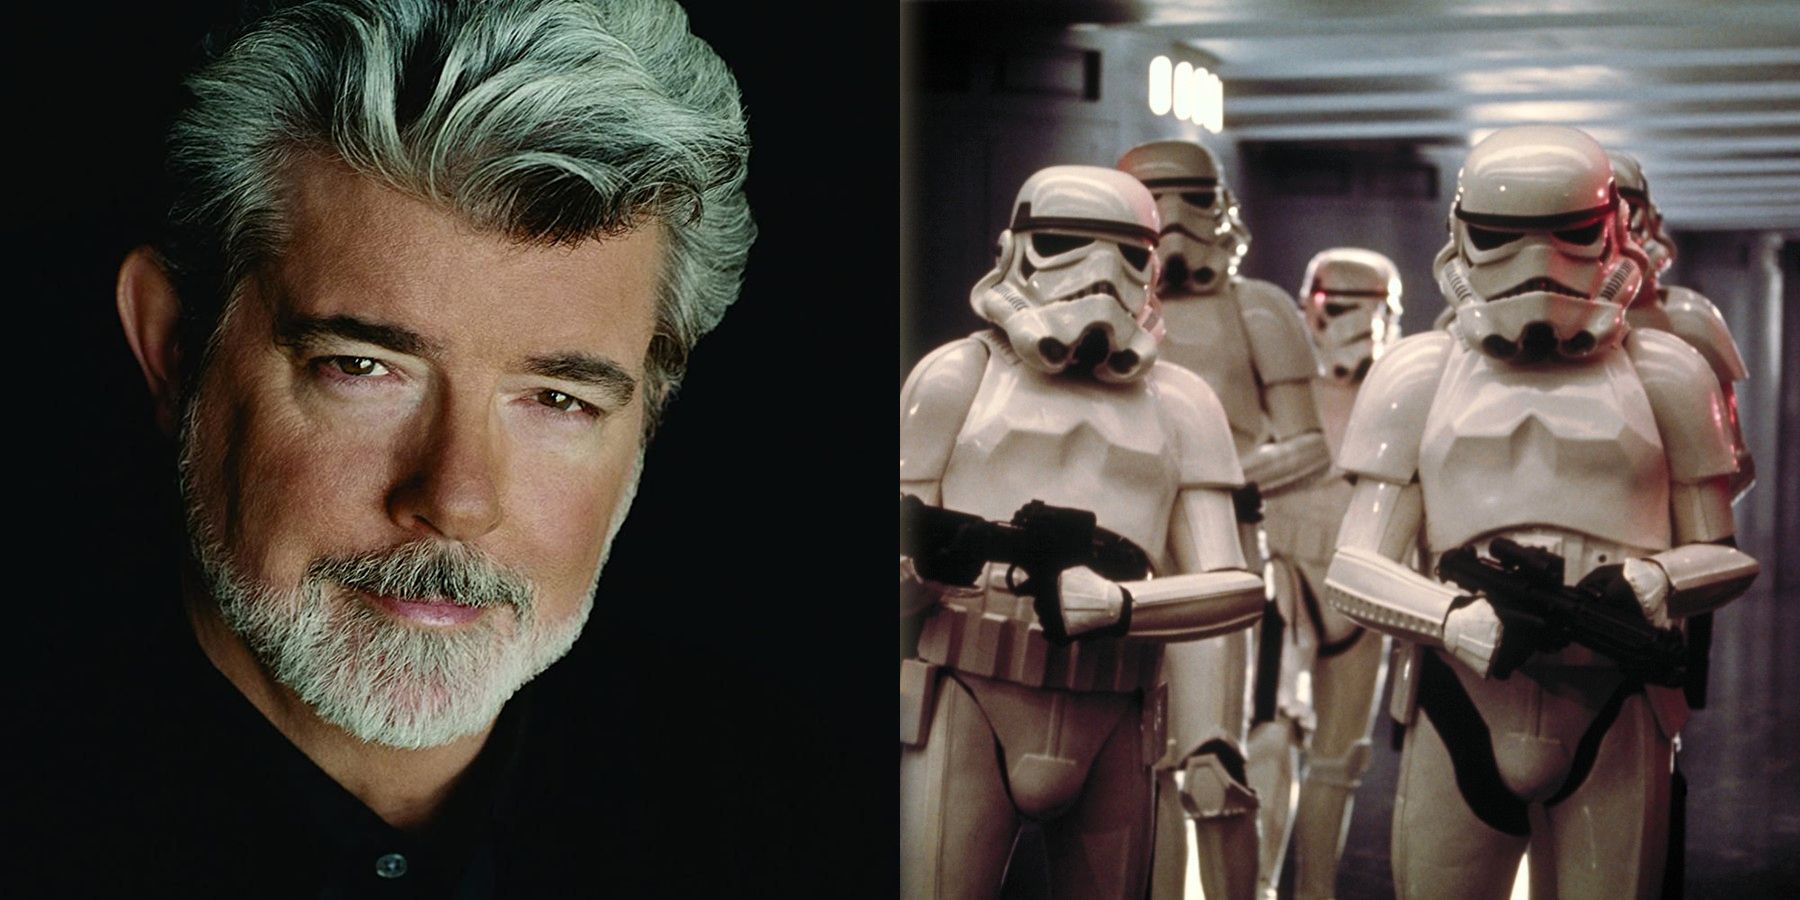 George Lucas zostaje uwieczniony jako nowa postać z Gwiezdnych Wojen